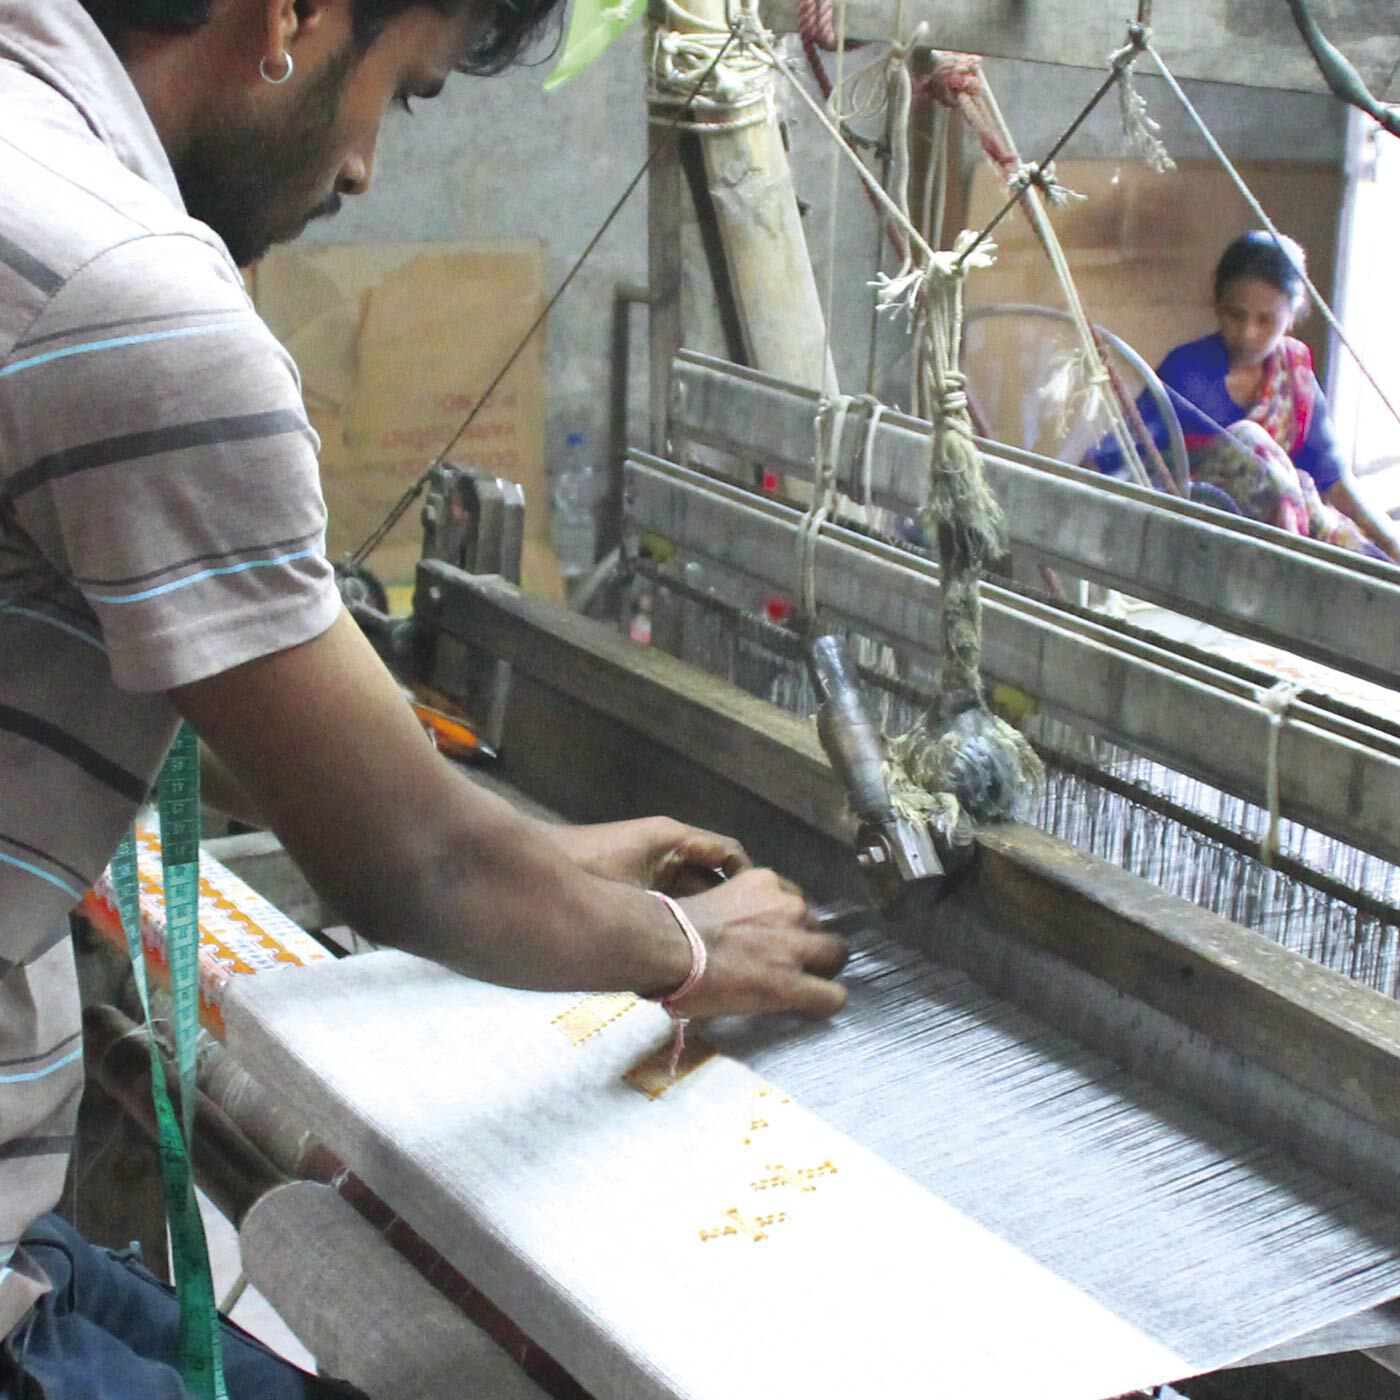 el:ment|絶滅危惧植物のサンショウバラの刺しゅうが華やぐ　ネパールの職人が織り上げた軽やかヤクウールストール|ネパールの織物職人さんの貴重な技を発揮してもらうべく、ヤクウールのストールを一枚一枚織っていただきました。